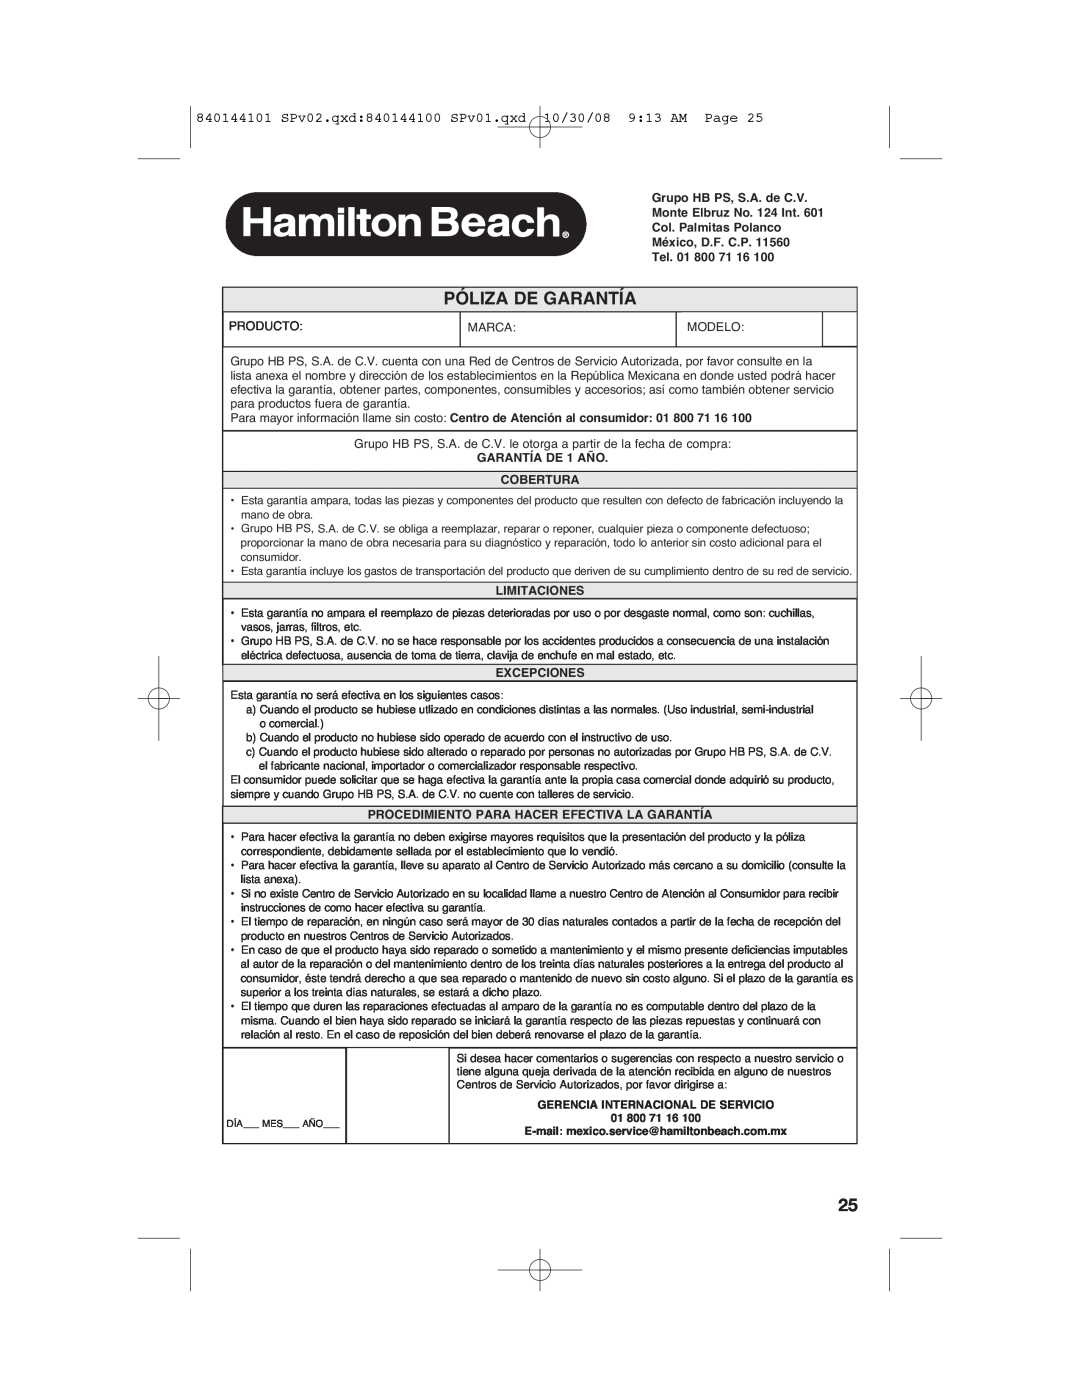 Hamilton Beach manual Póliza De Garantía, 10/30/08 9 13 AM Page, 840144101 SPv02.qxd 840144100 SPv01.qxd 